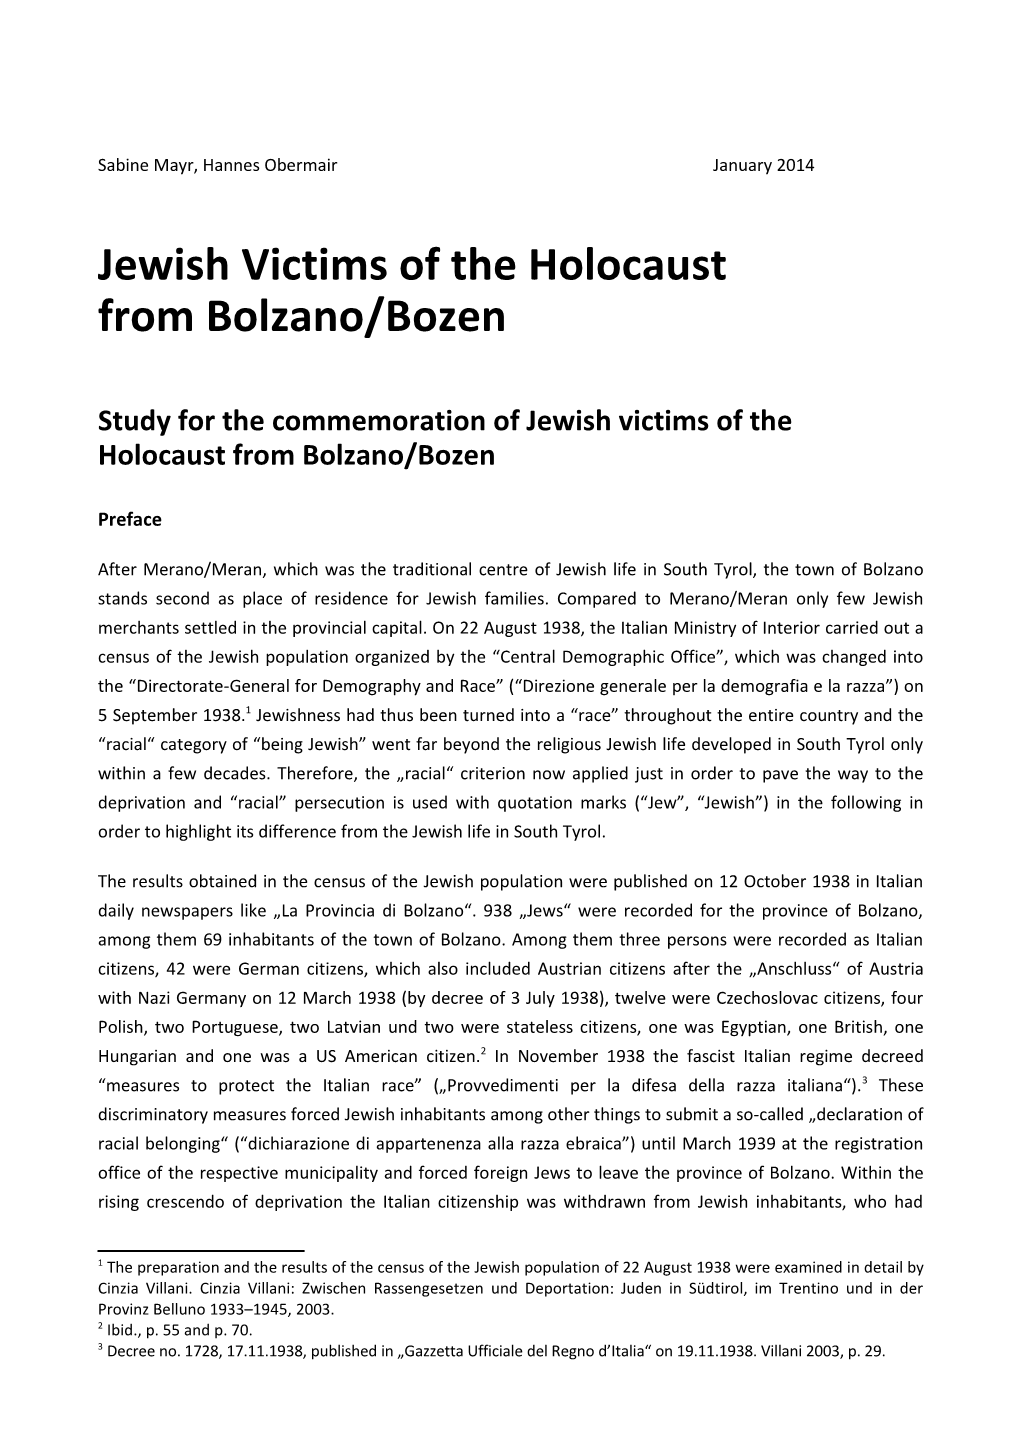 Jewish Victims of the Holocaust from Bolzano/Bozen